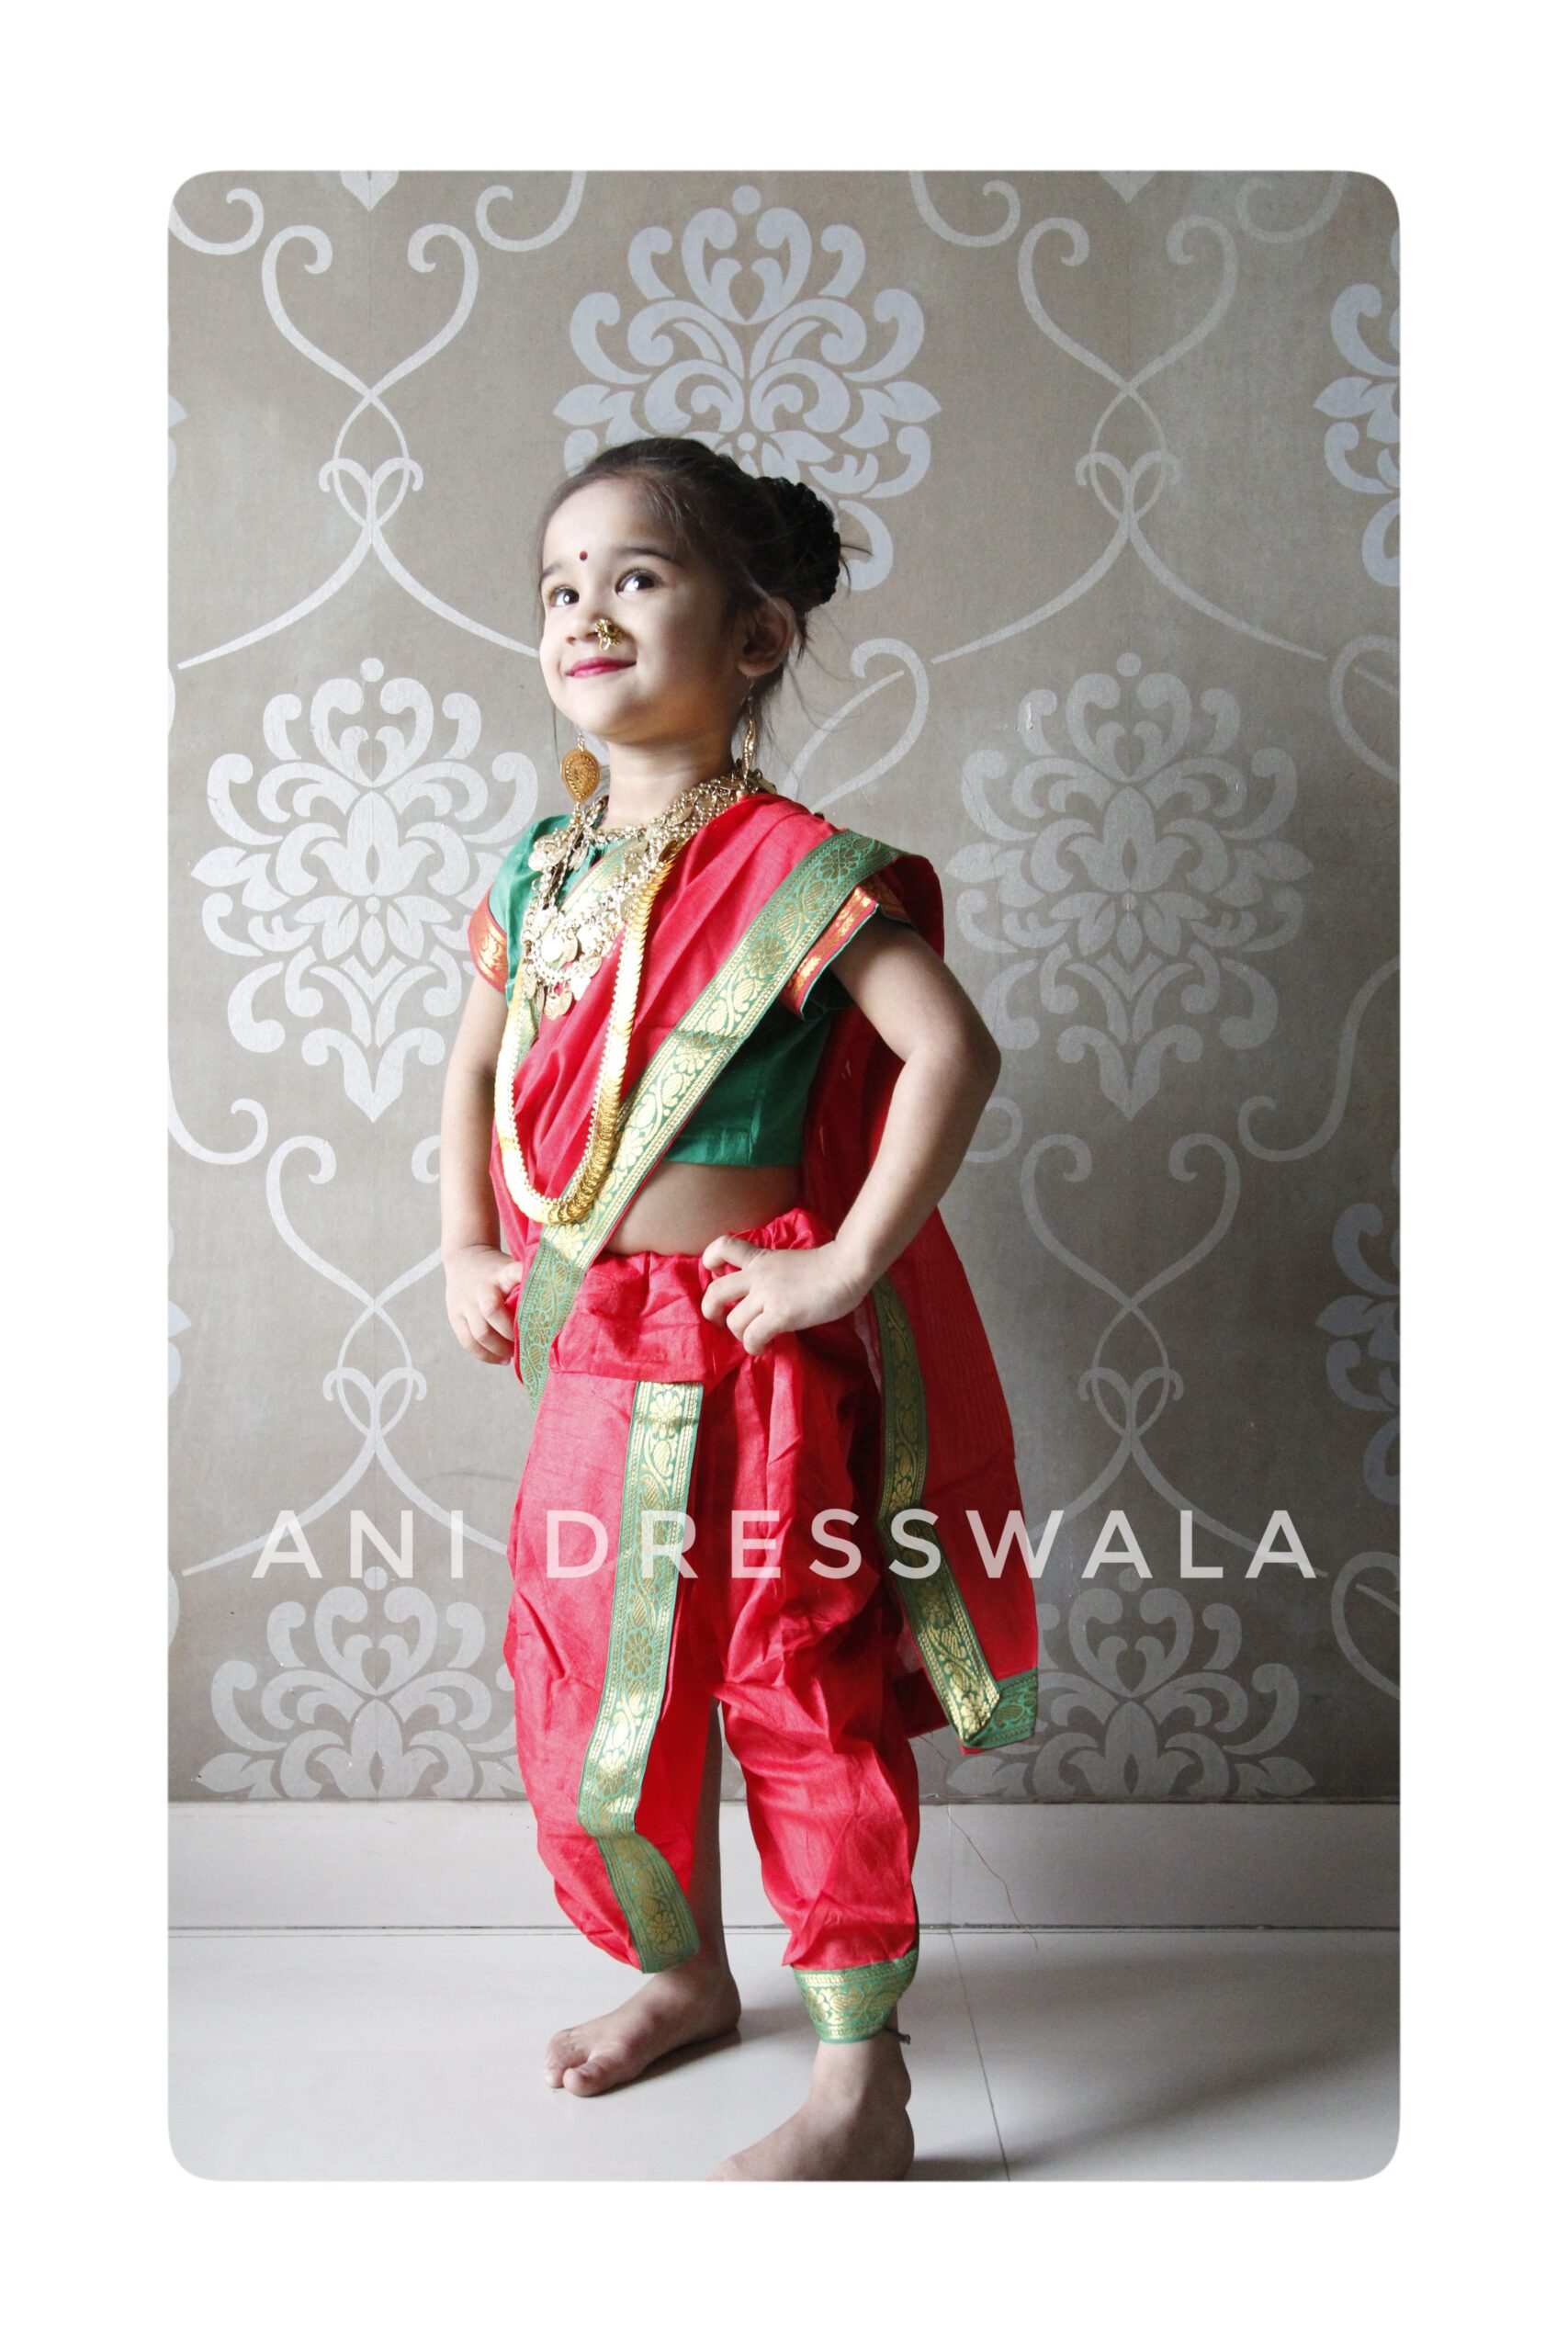 Costumes of Maharashtra - Traditional Maharashtra Costumes & Dresses,  Marathi Costumes & Dress